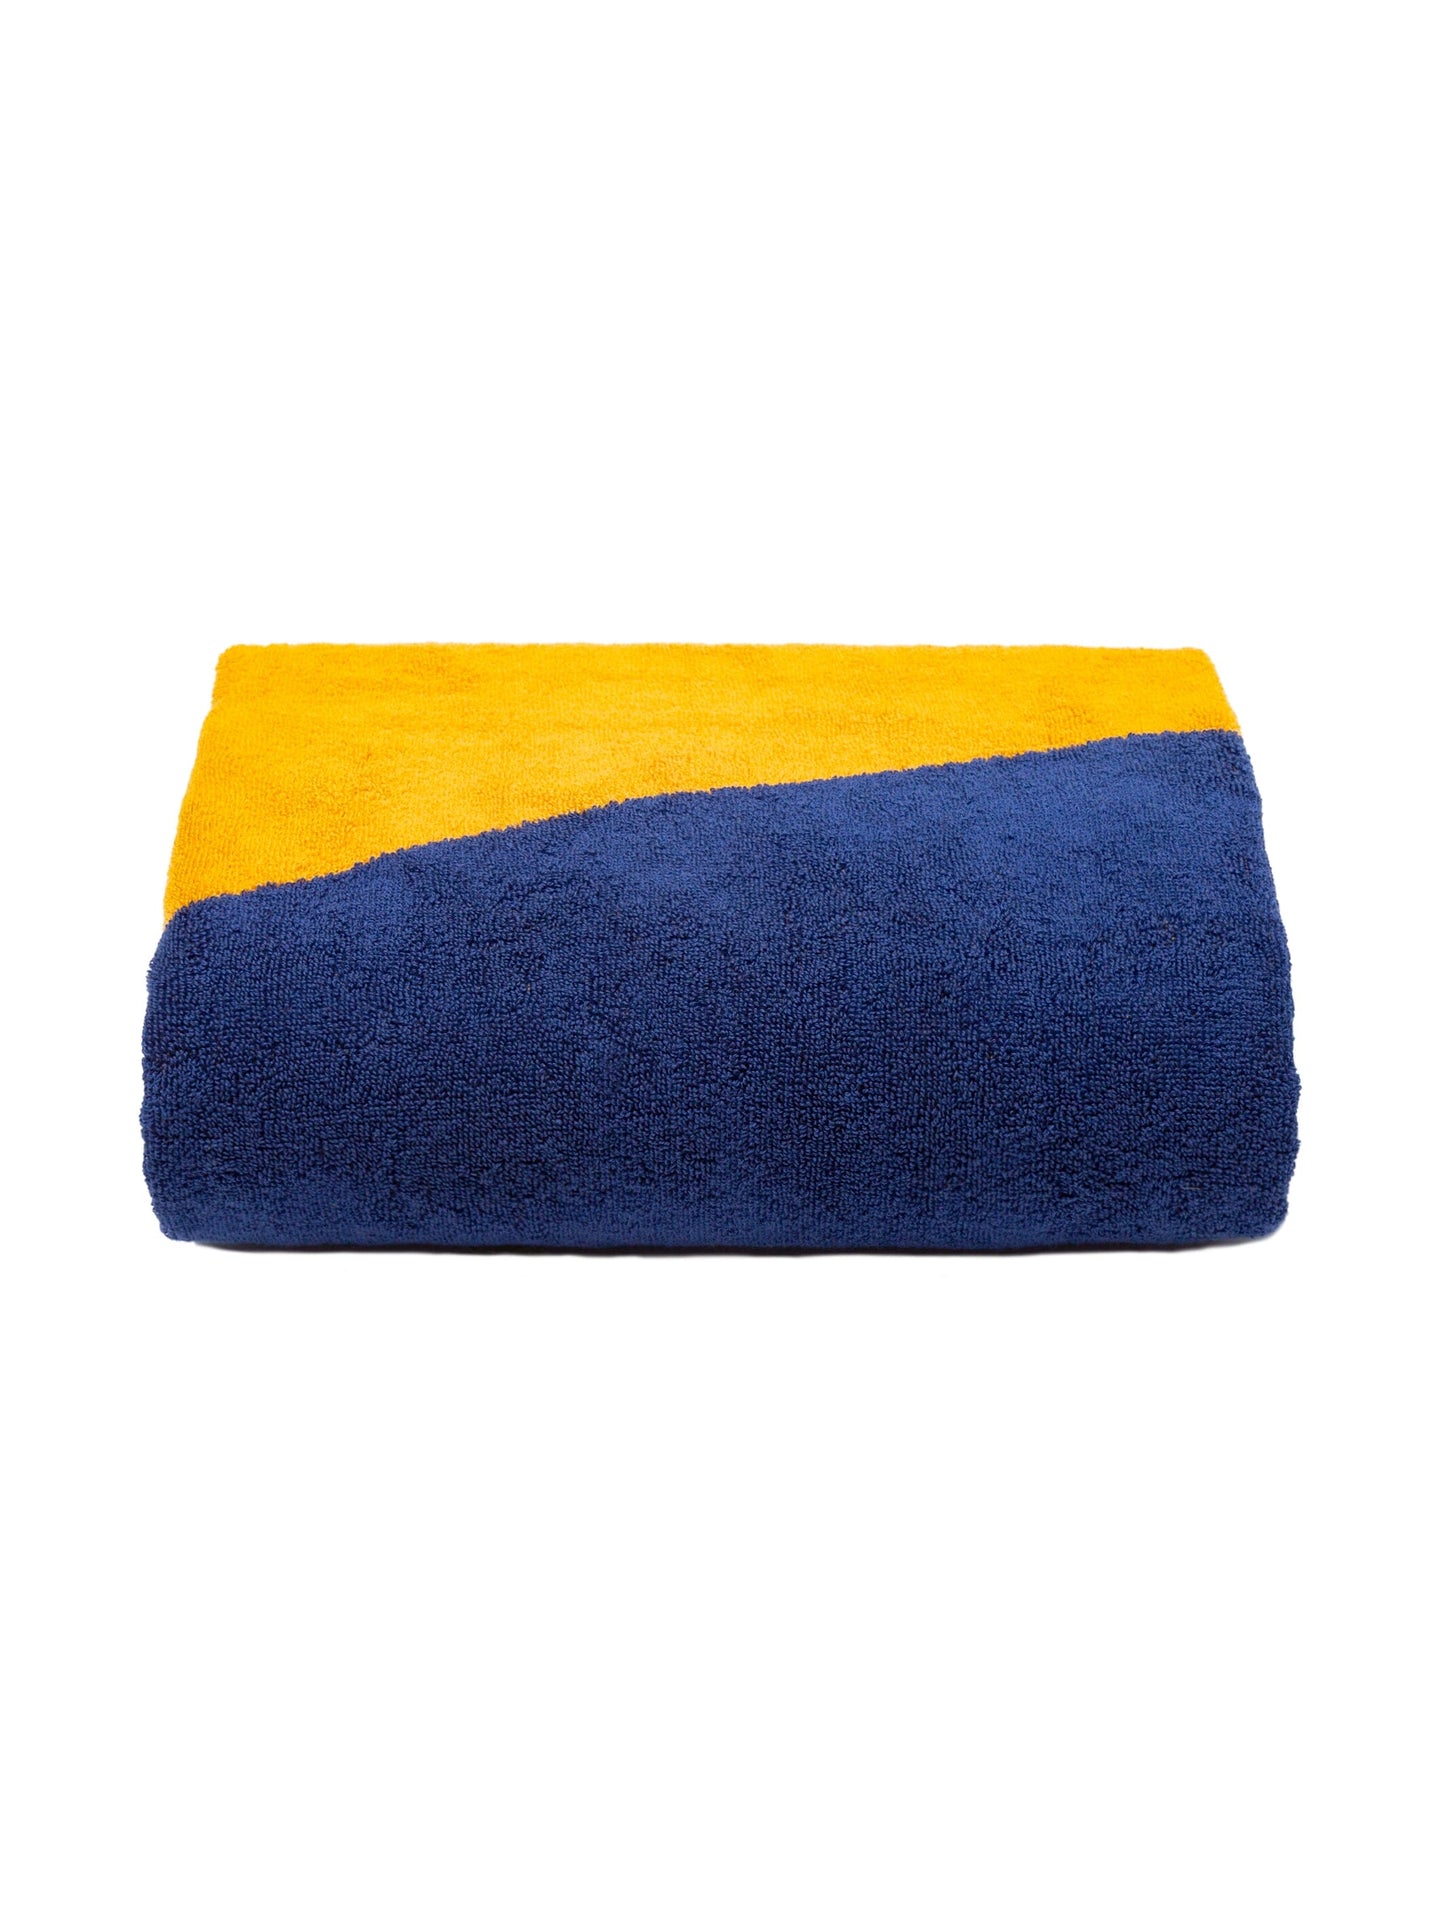 Dune Towel Towels Tucca 